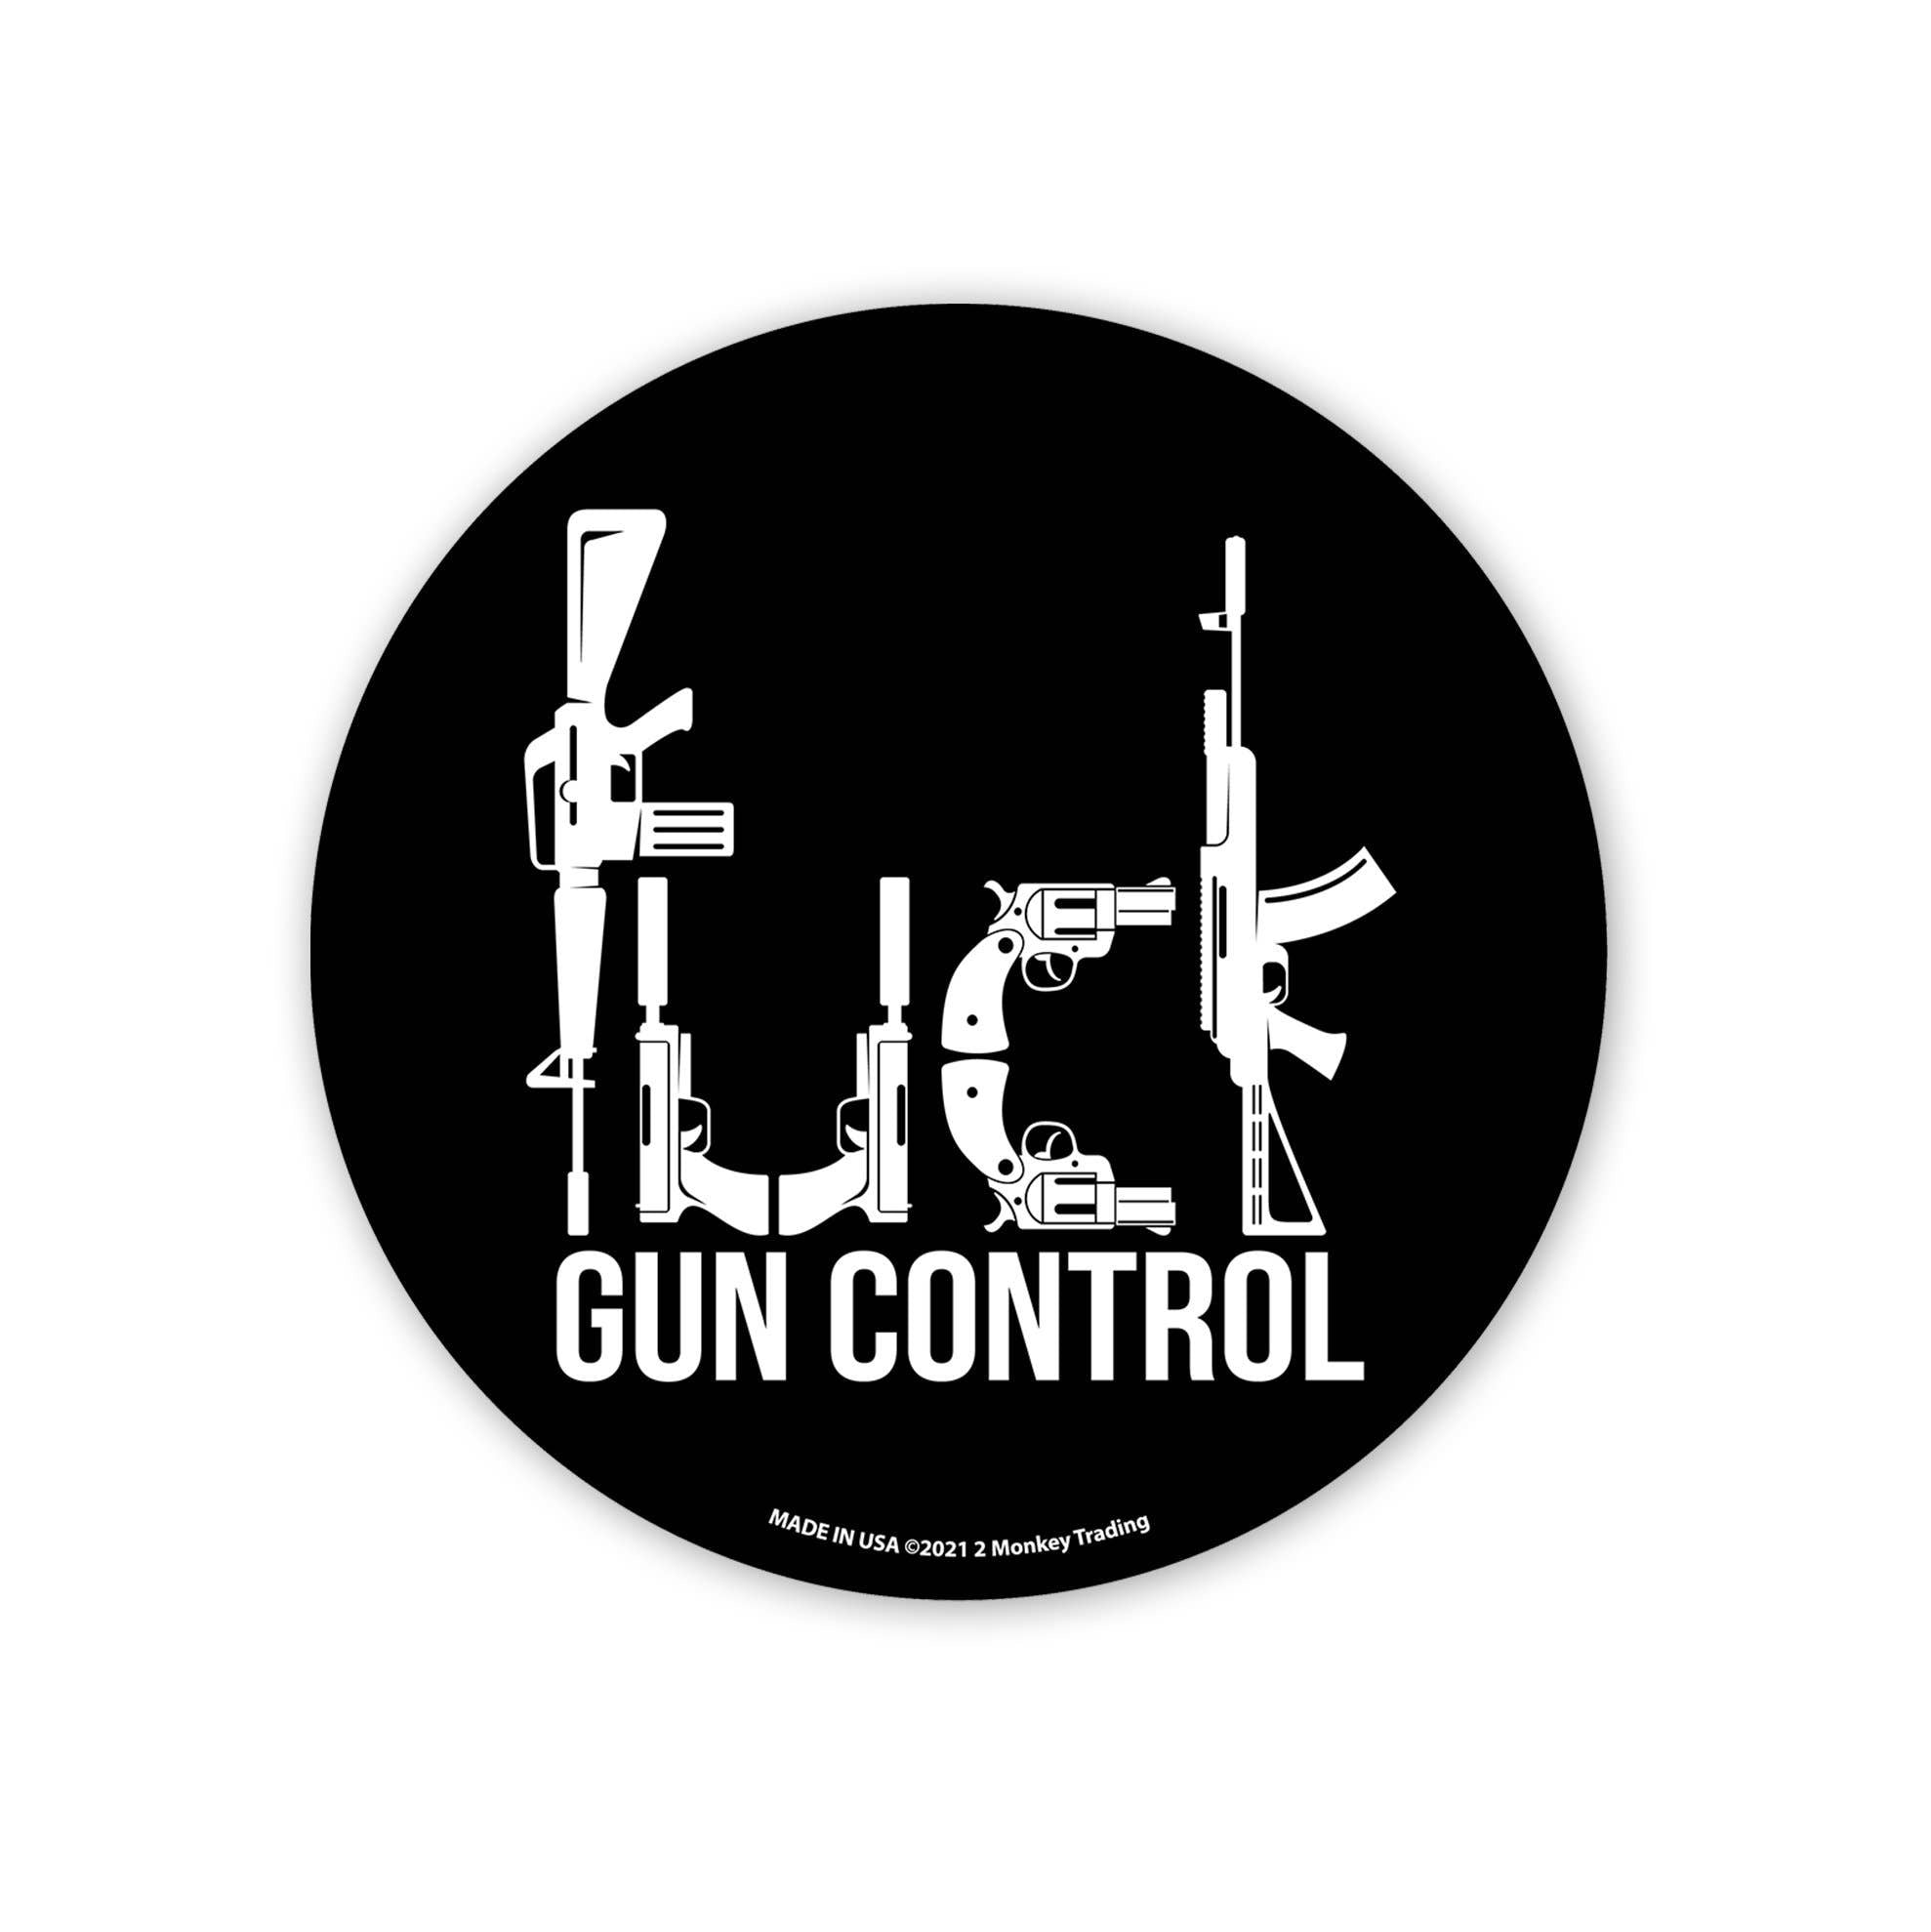 F Gun Control - 4.5 x 4.5 in. Decal